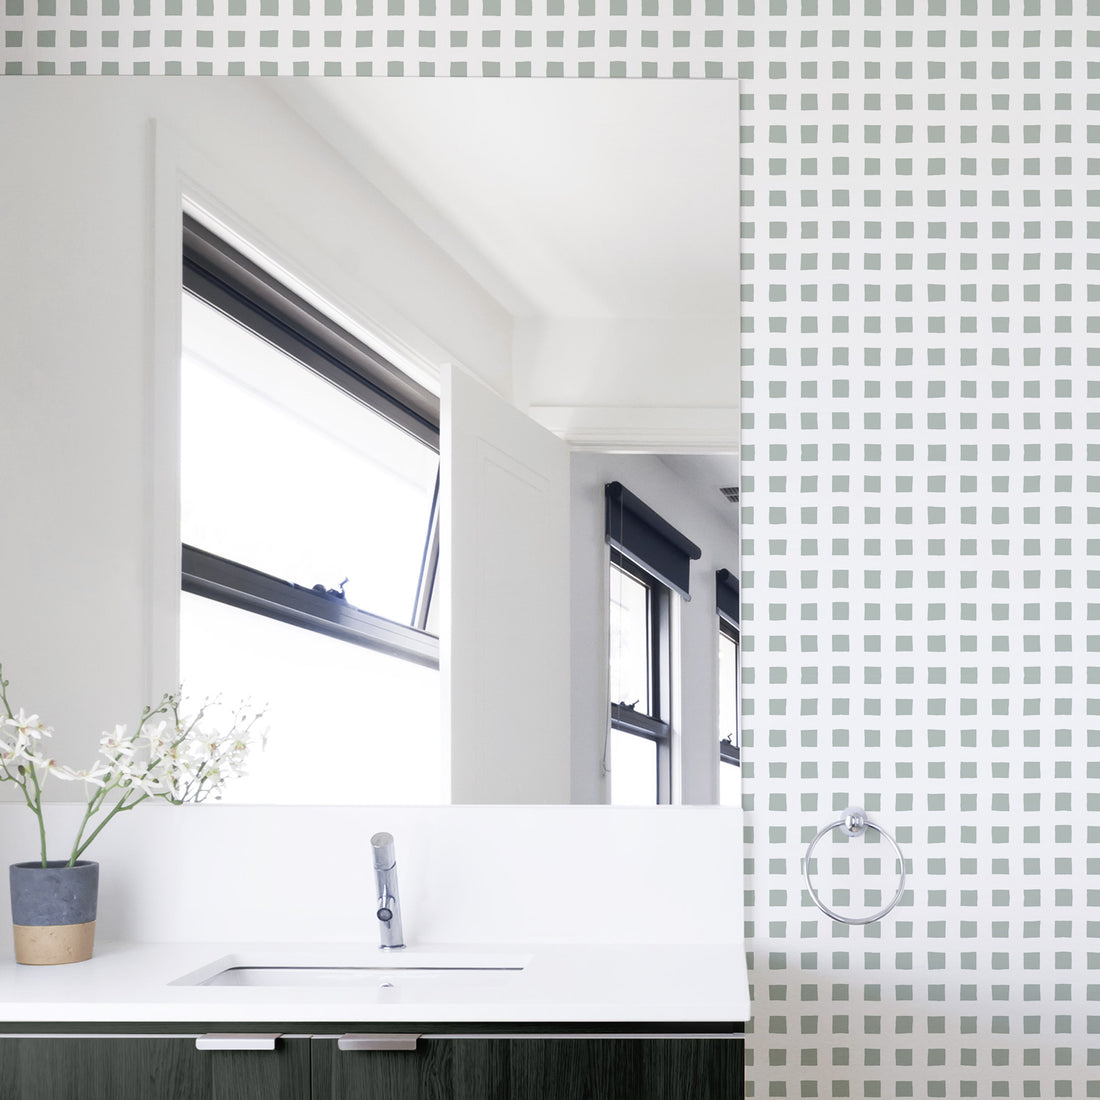 light green gingham inspired removable wallpaper for bathroom interior